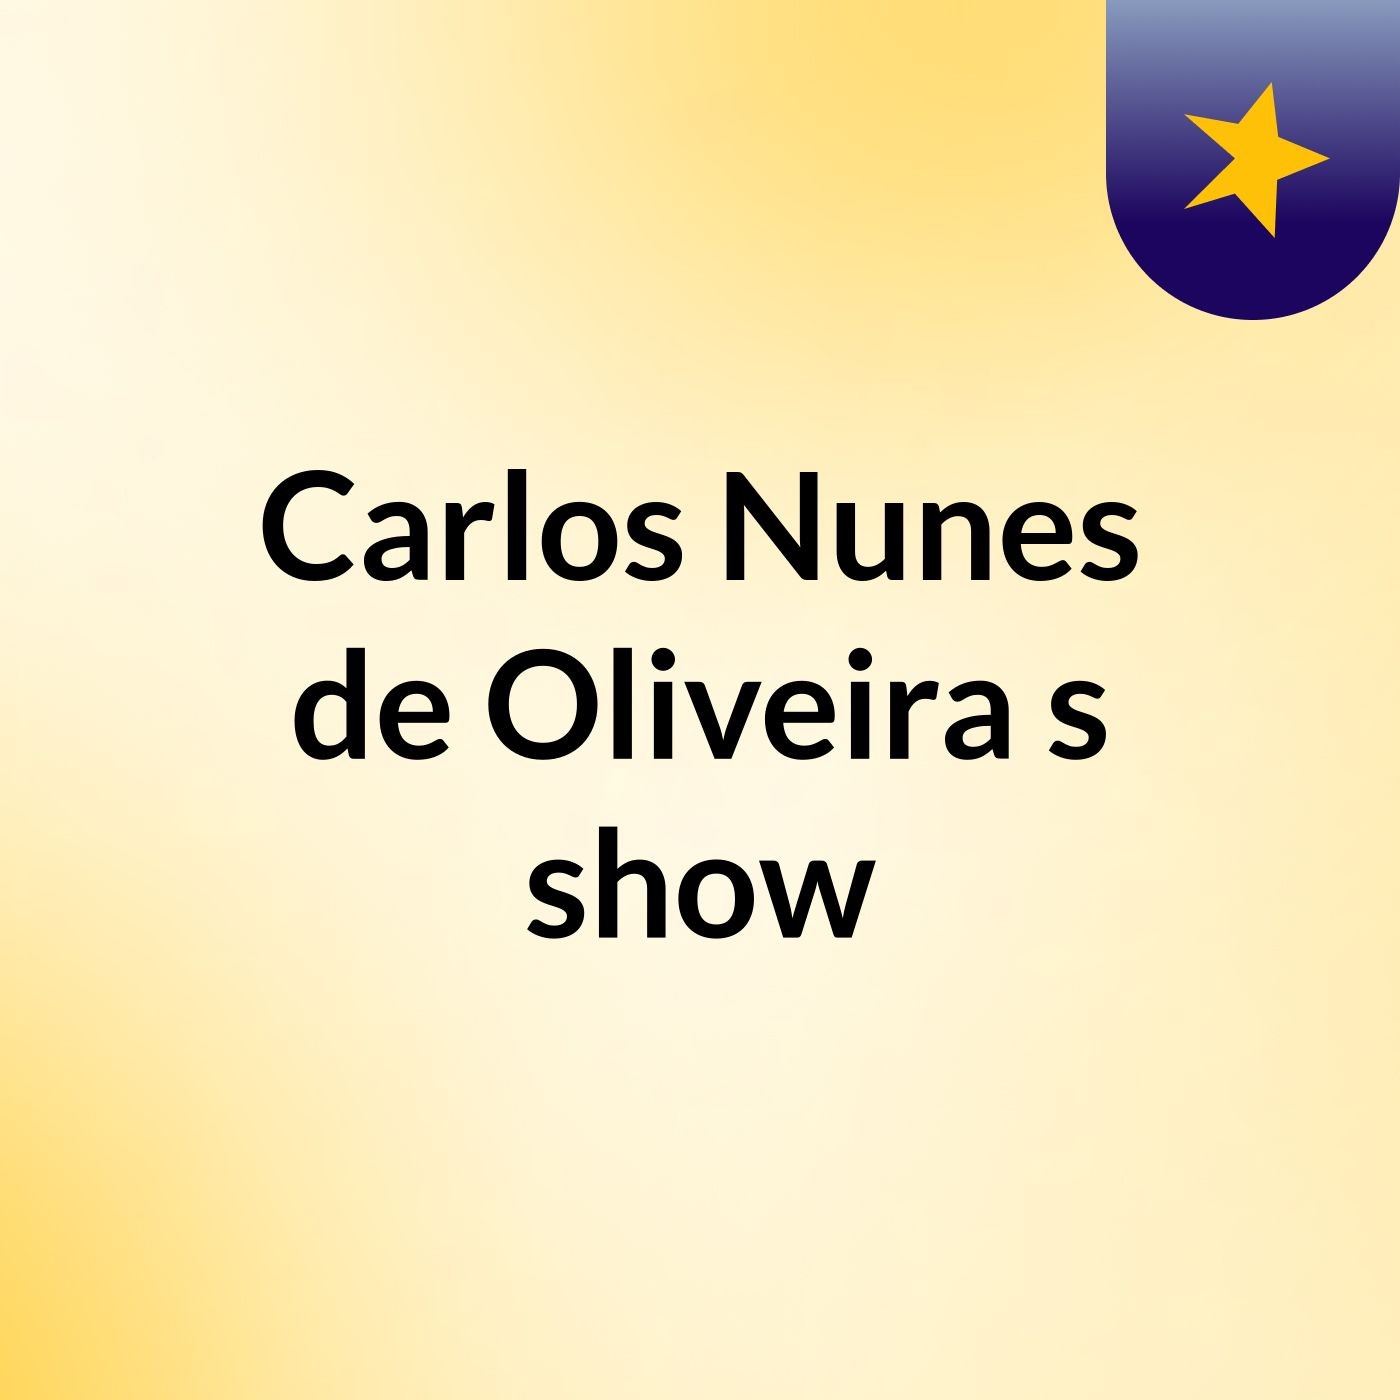 Carlos Nunes de Oliveira's show